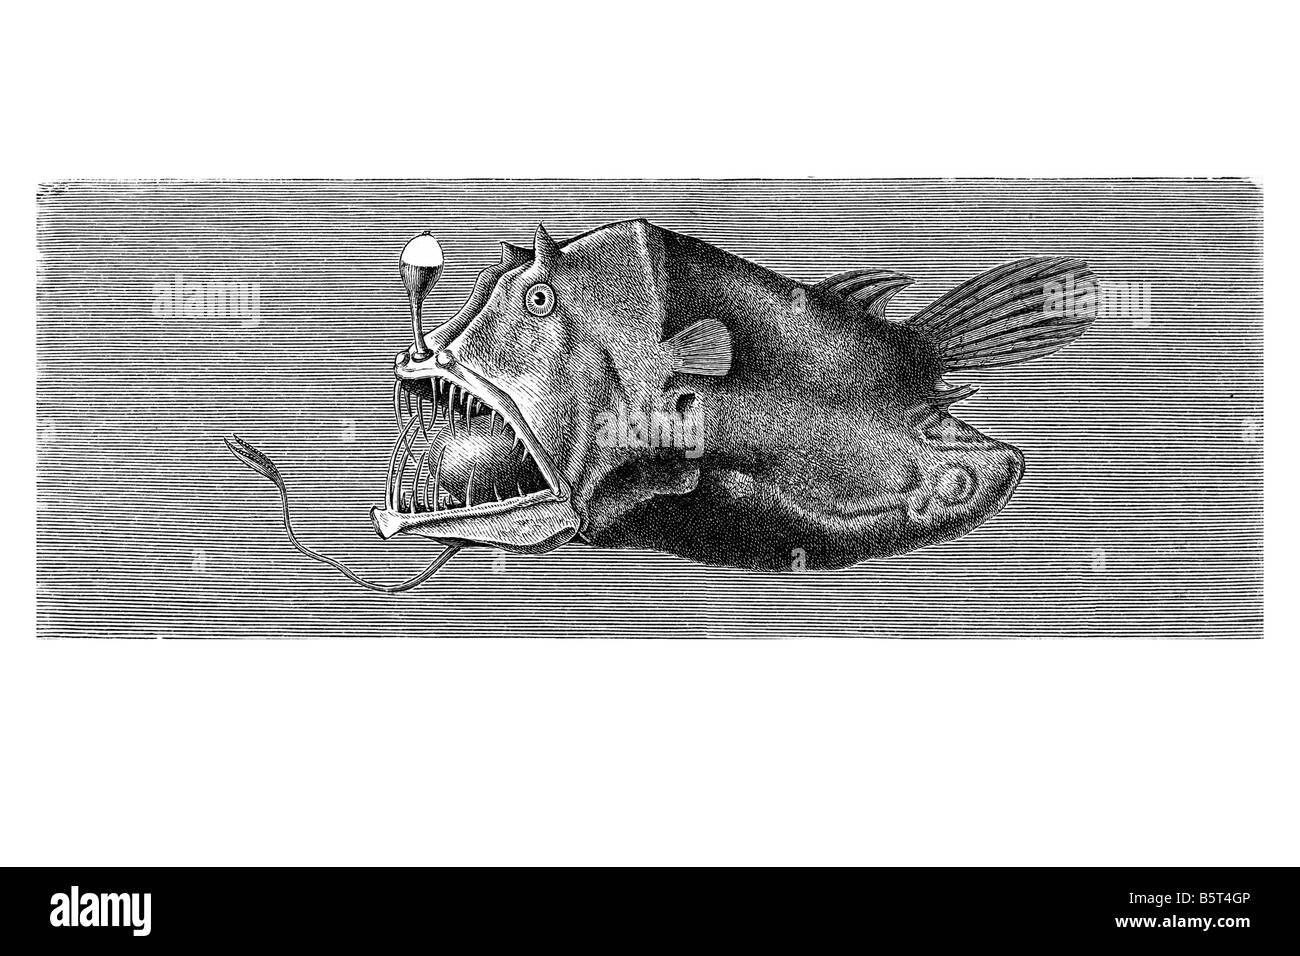 Anglerfishes Leftvent Borophryne netdevil apogon petite lophiiform en haute mer la famille des poissons Linophrynidae drôle de mimétisme animal Banque D'Images